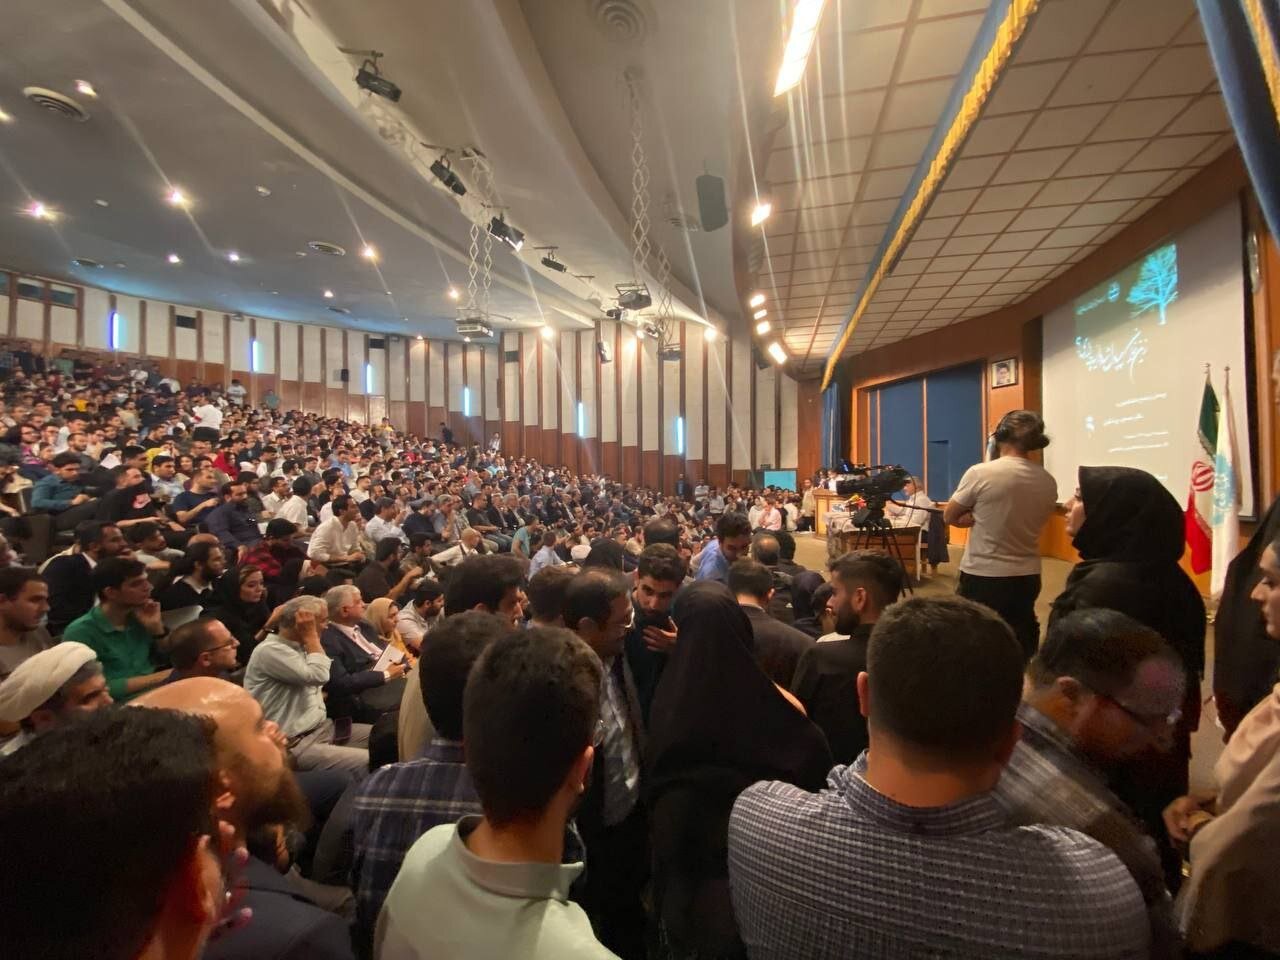 پزشکیان دانشگاه تهران را تکان داد /موج حضور دانشجویان در سالن سخنرانی +عکس